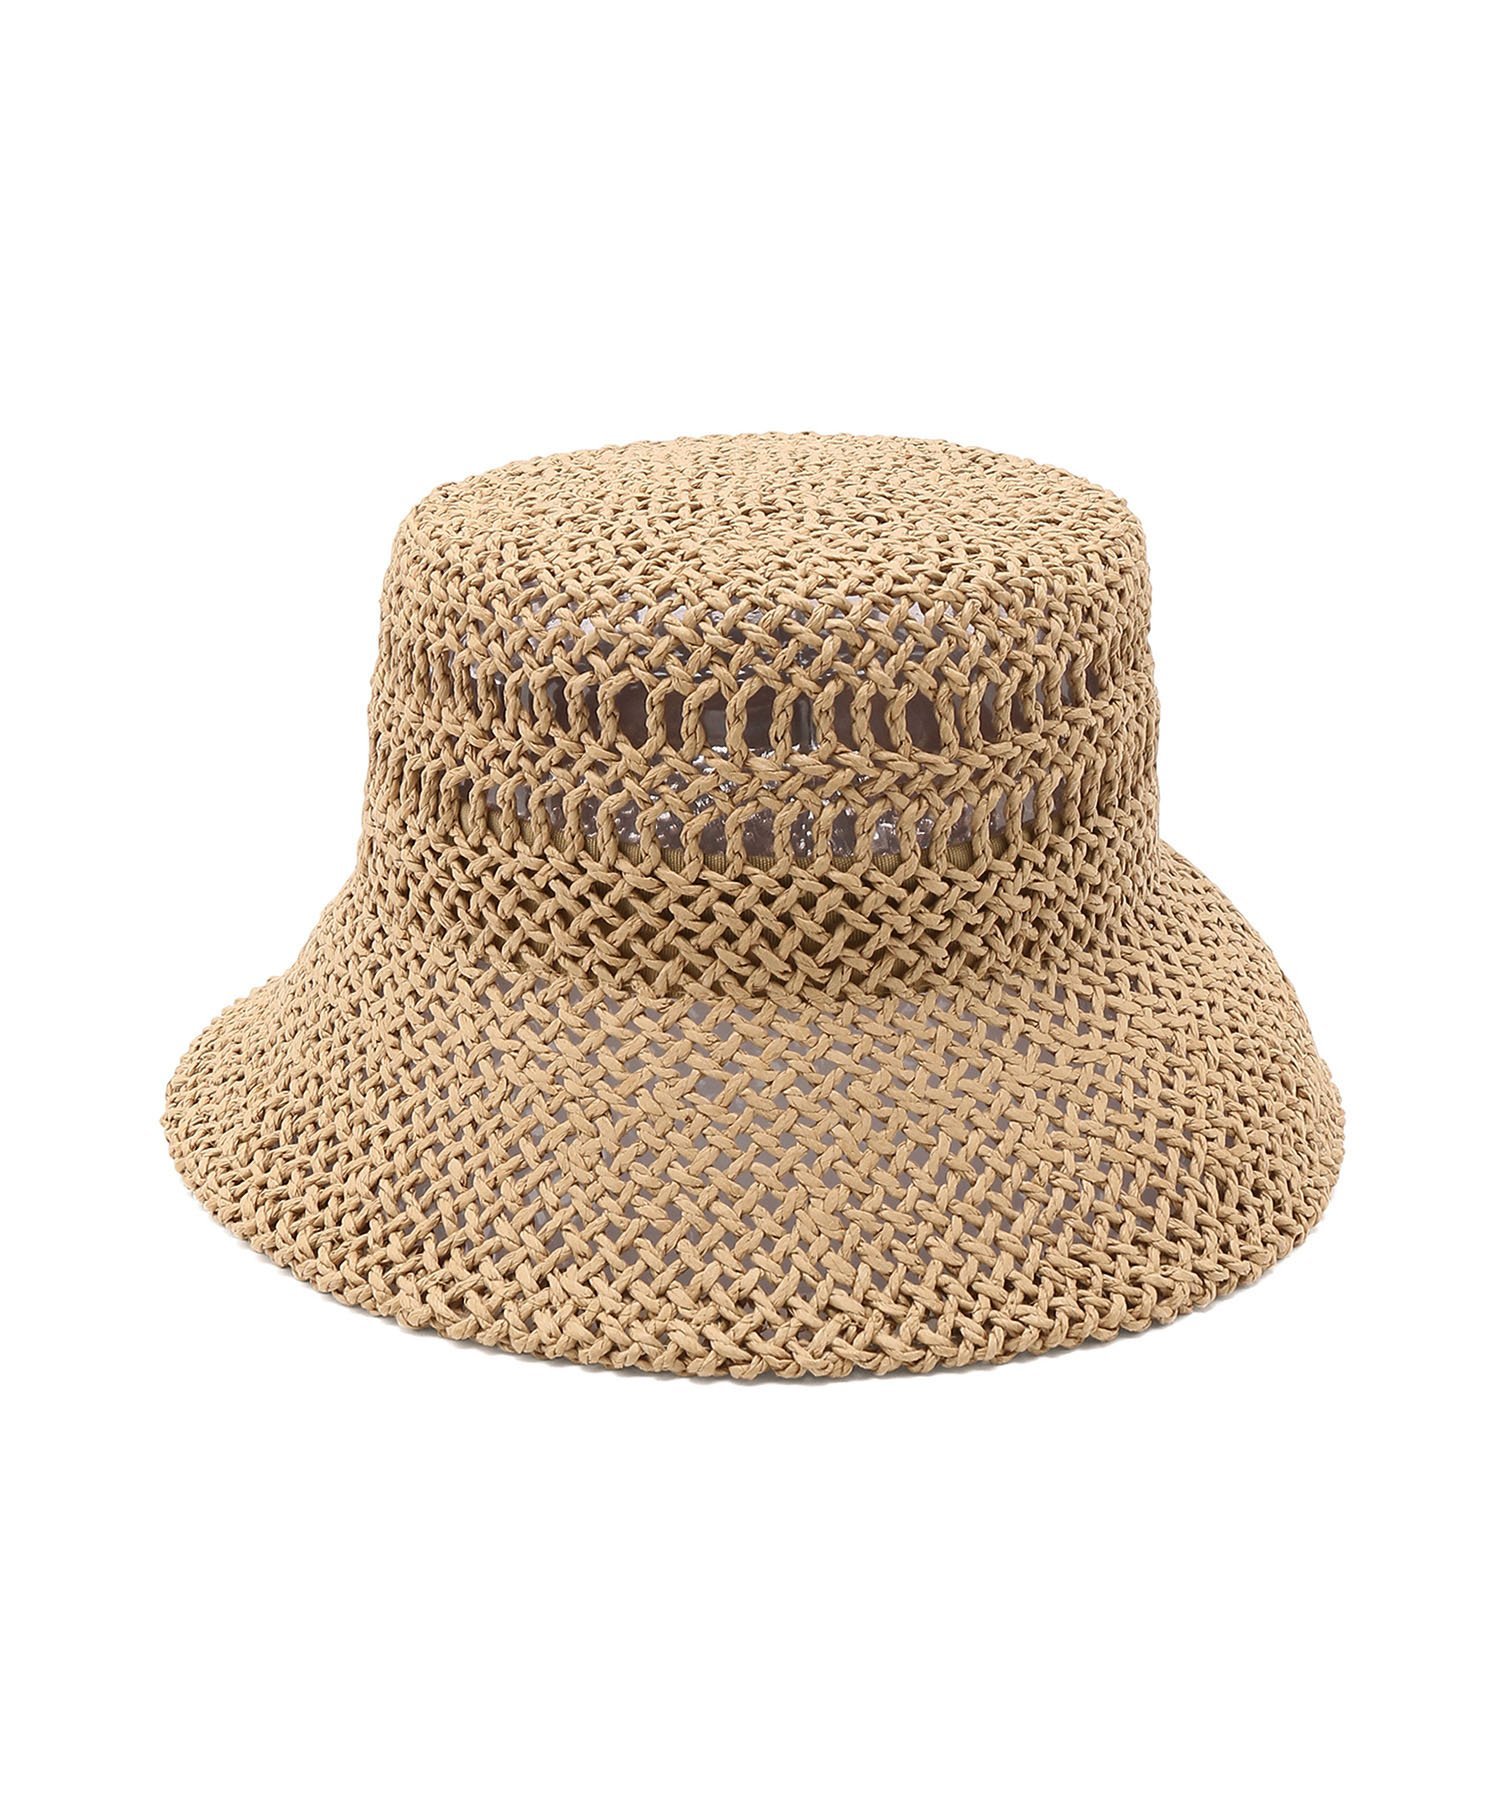 ロペピクニック 帽子 レディース ROPE' PICNIC PASSAGE 透かし編みハット ロペピクニック 帽子 ハット ブラウン ベージュ